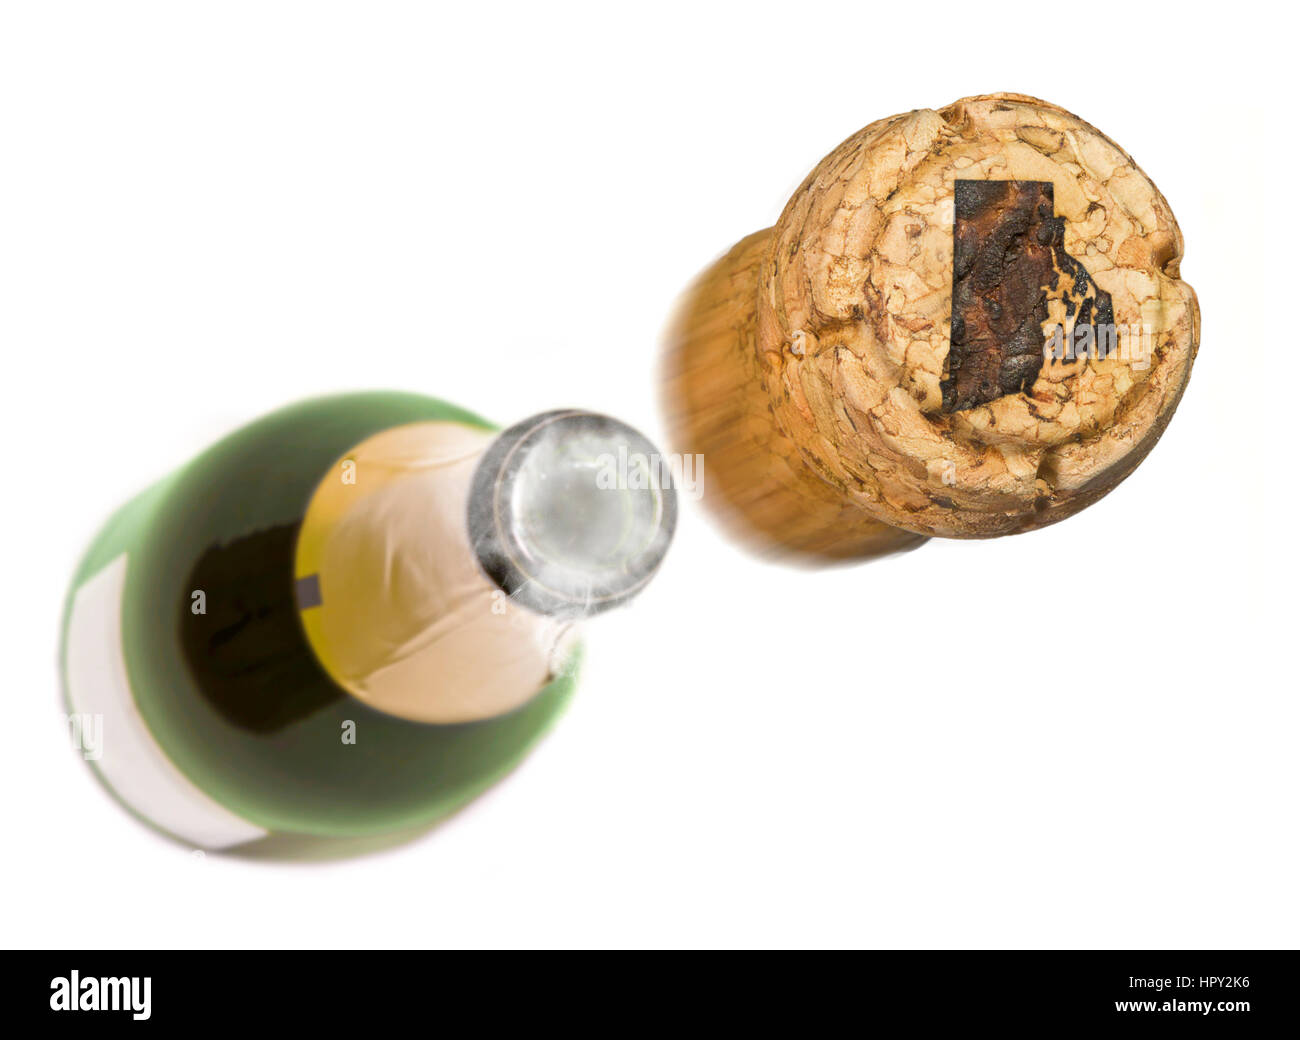 Champagne cork con la forma del quemado en Rhode Island y una botella de champán en la espalda.(series) Foto de stock